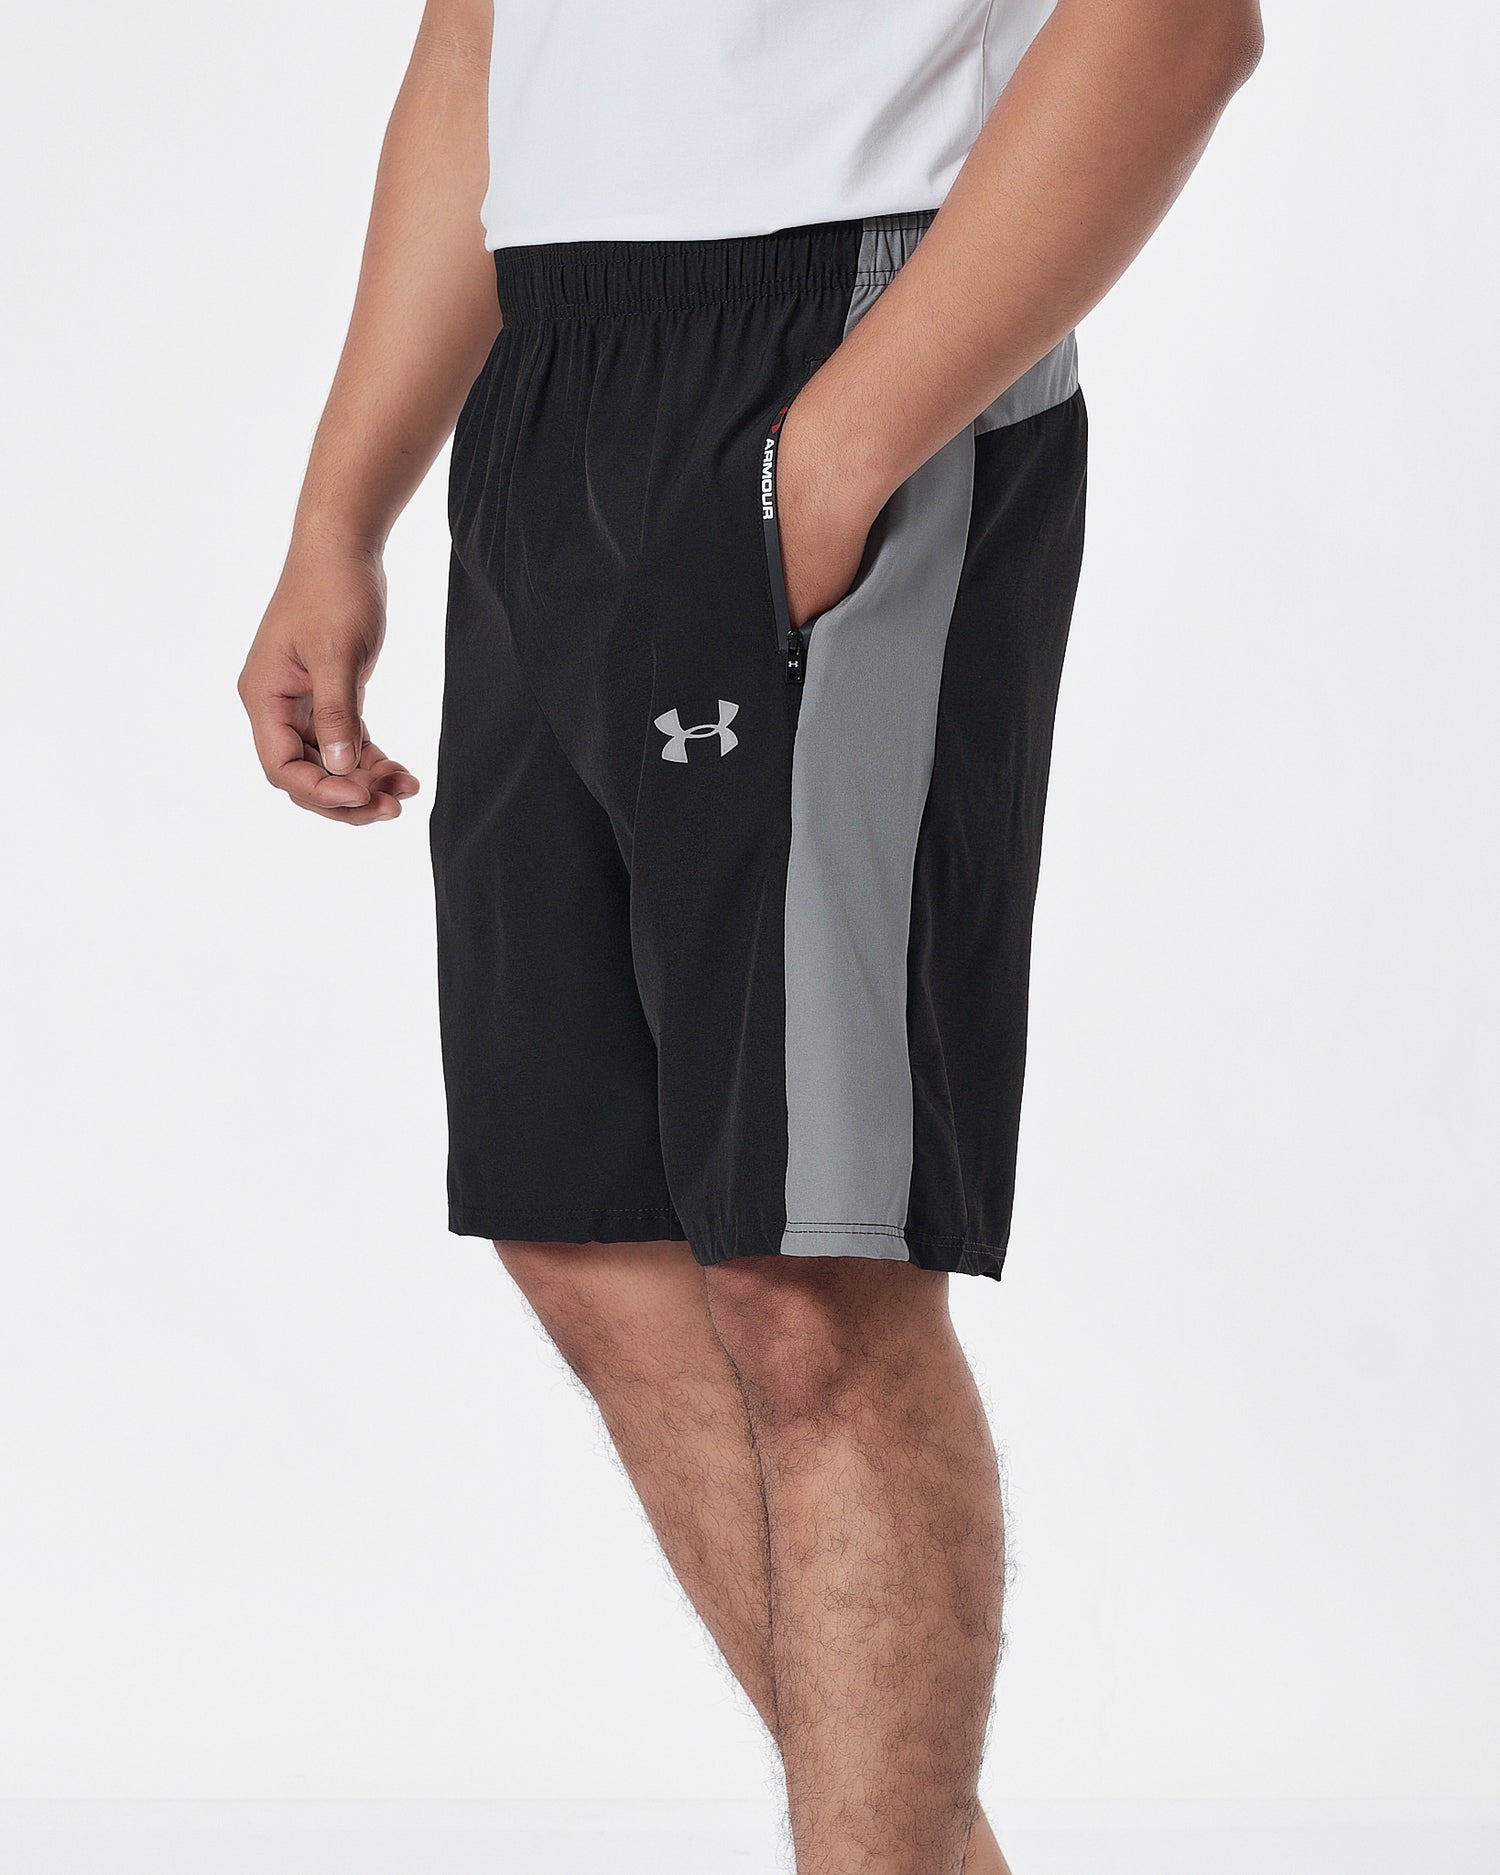 UA Side Striped Logo Vertical Men Black Track Shorts 12.90